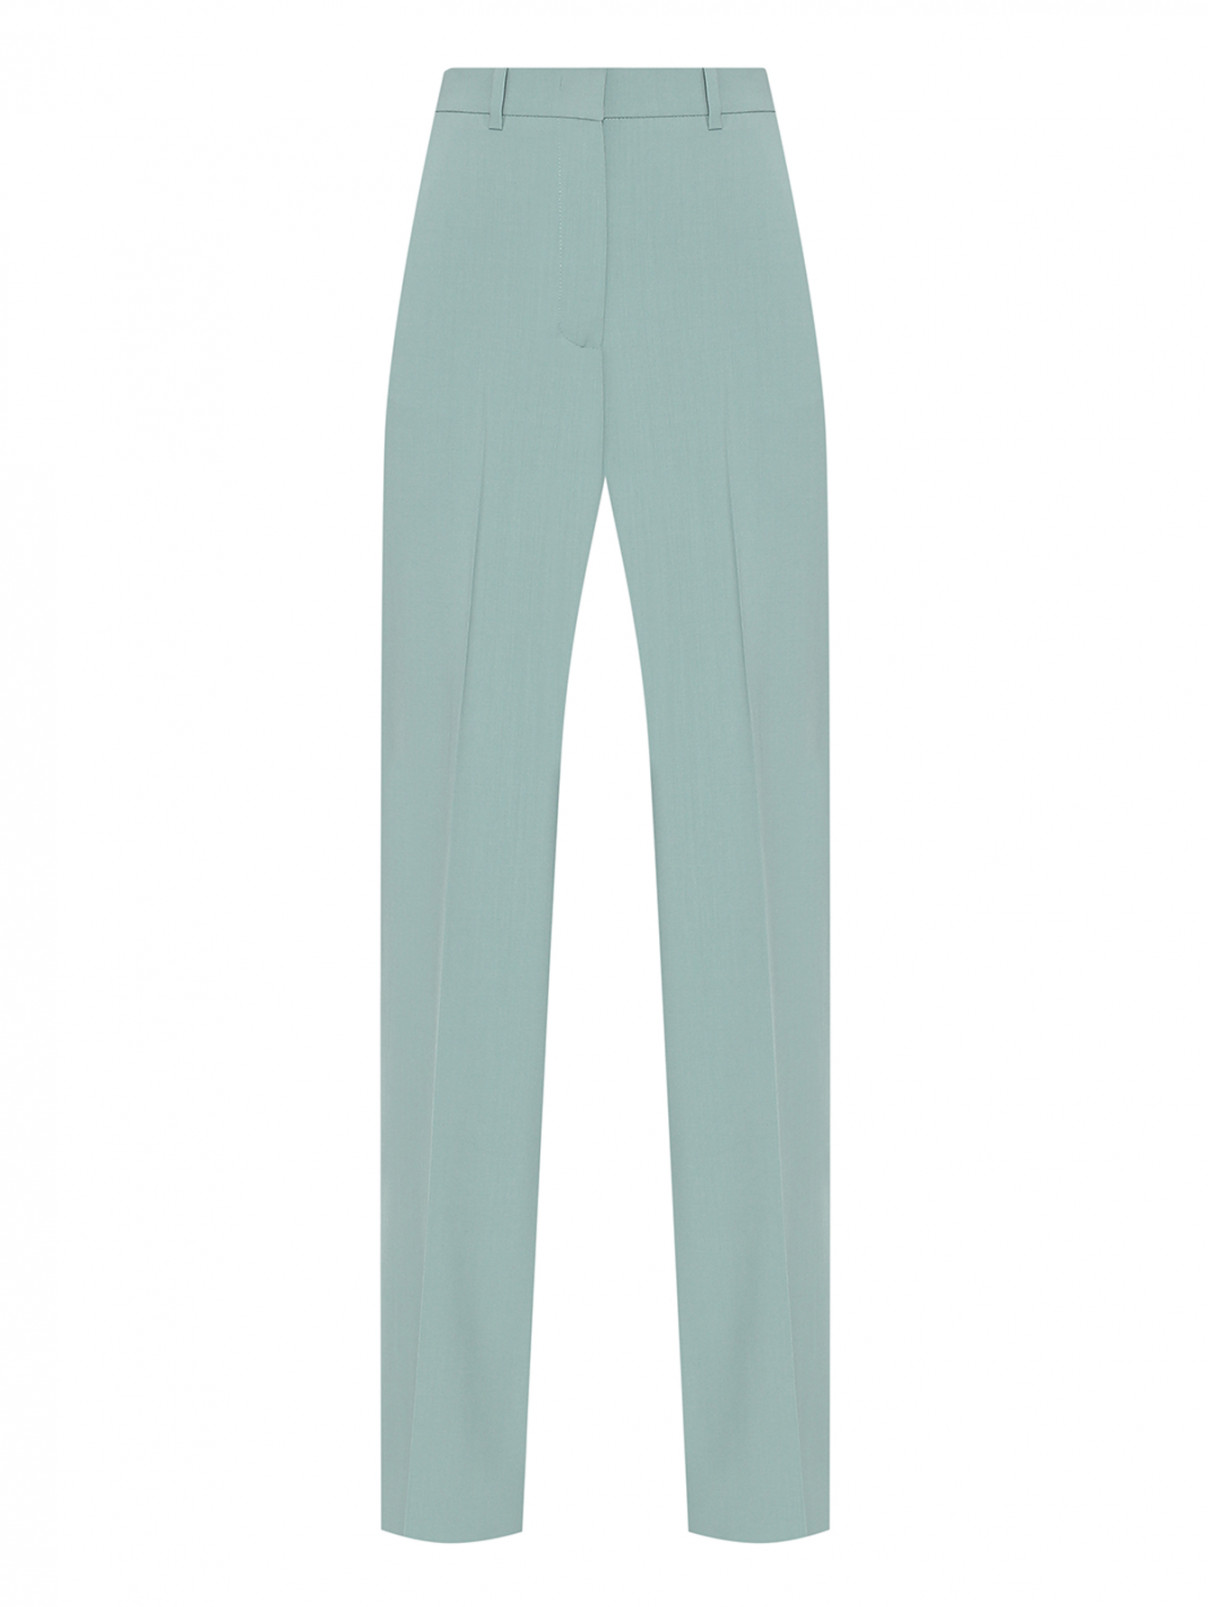 Однотонные брюки из шерсти Weekend Max Mara  –  Общий вид  – Цвет:  Зеленый